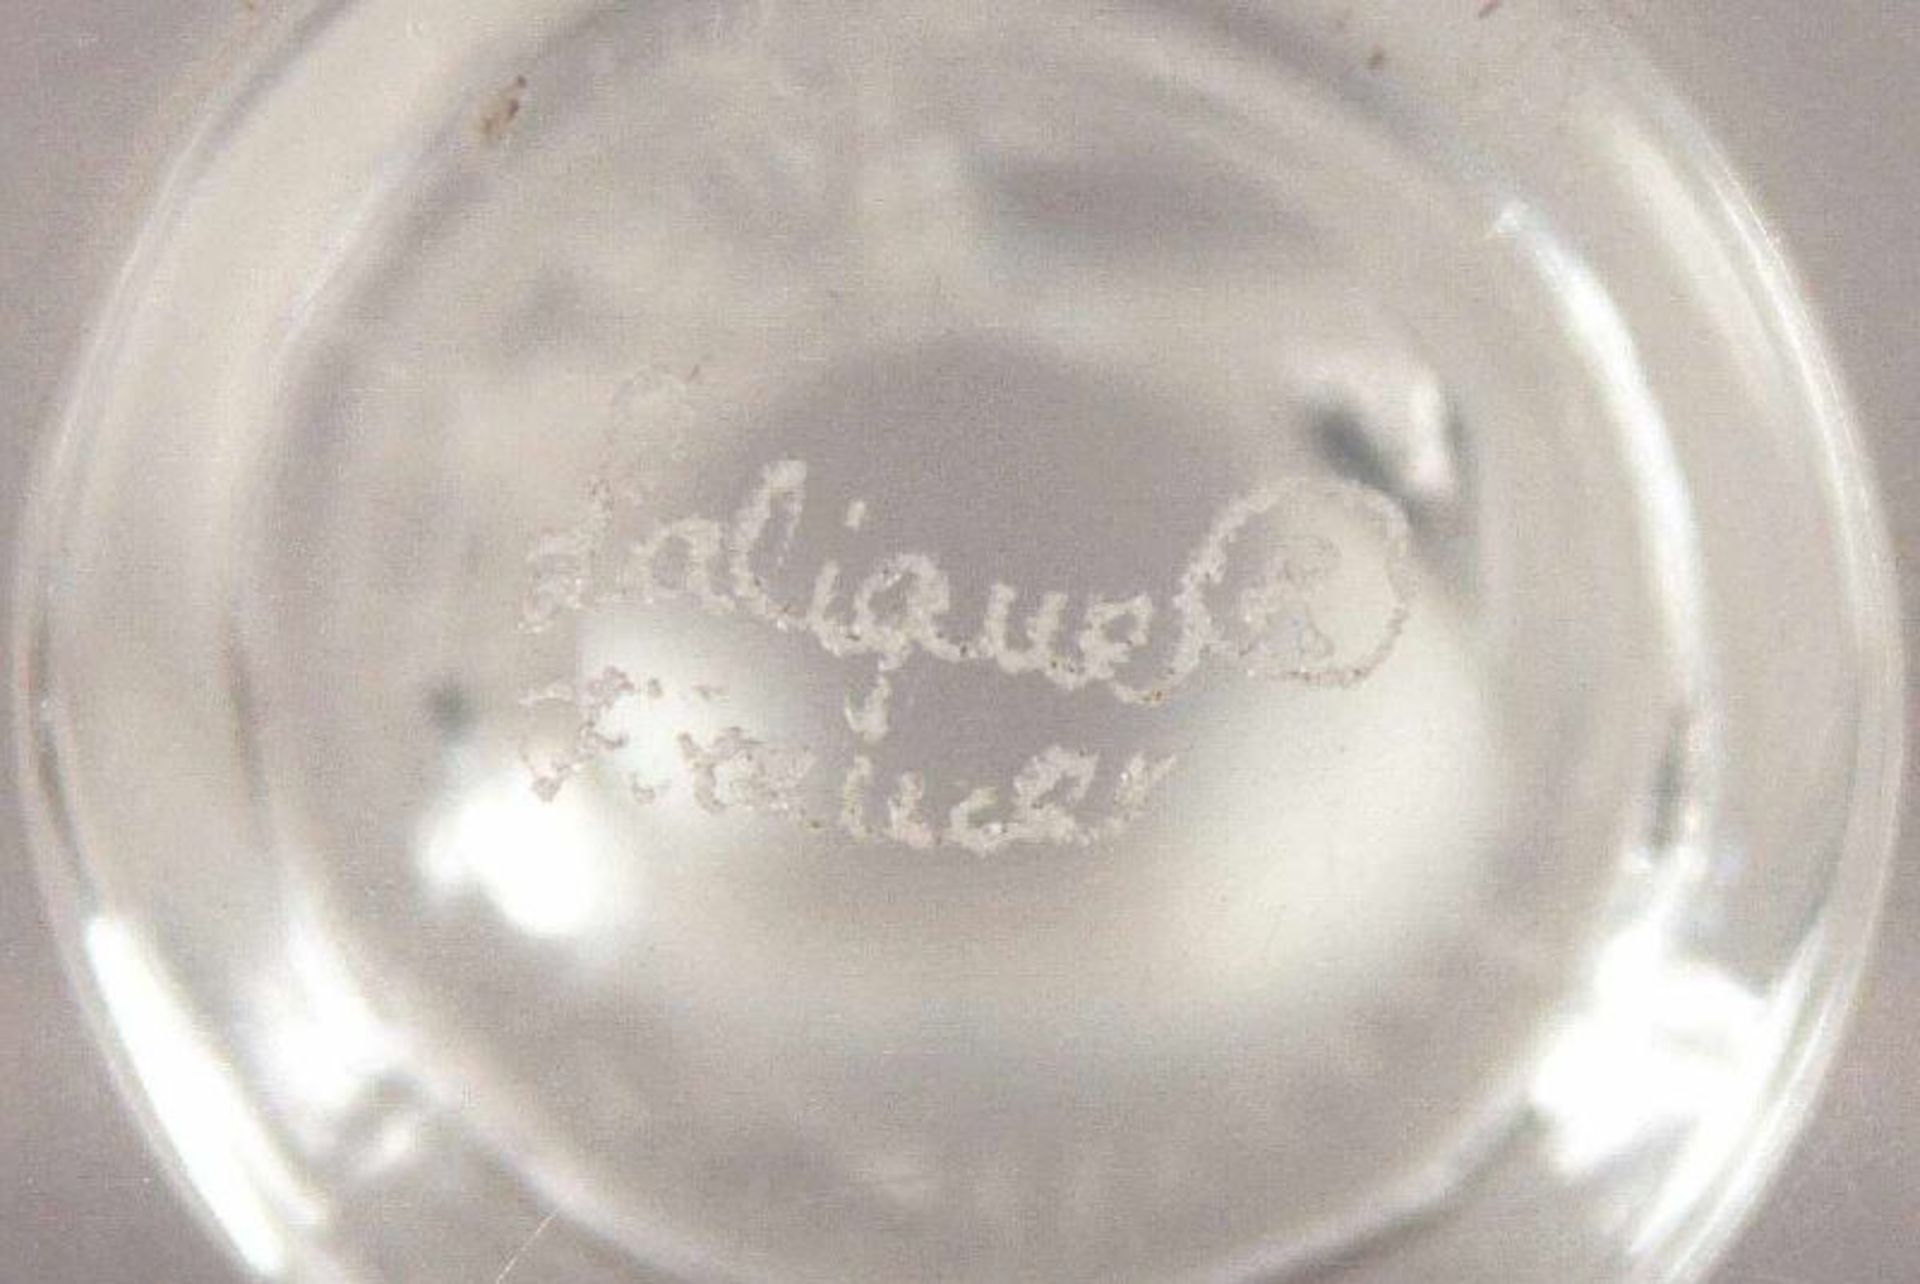 KLEINE GLASSKULPTUR "FALKE", farbloses Glas, partiell satiniert, H 7,3, LALIQUE, 20.Jh. 22.00 % - Bild 2 aus 2